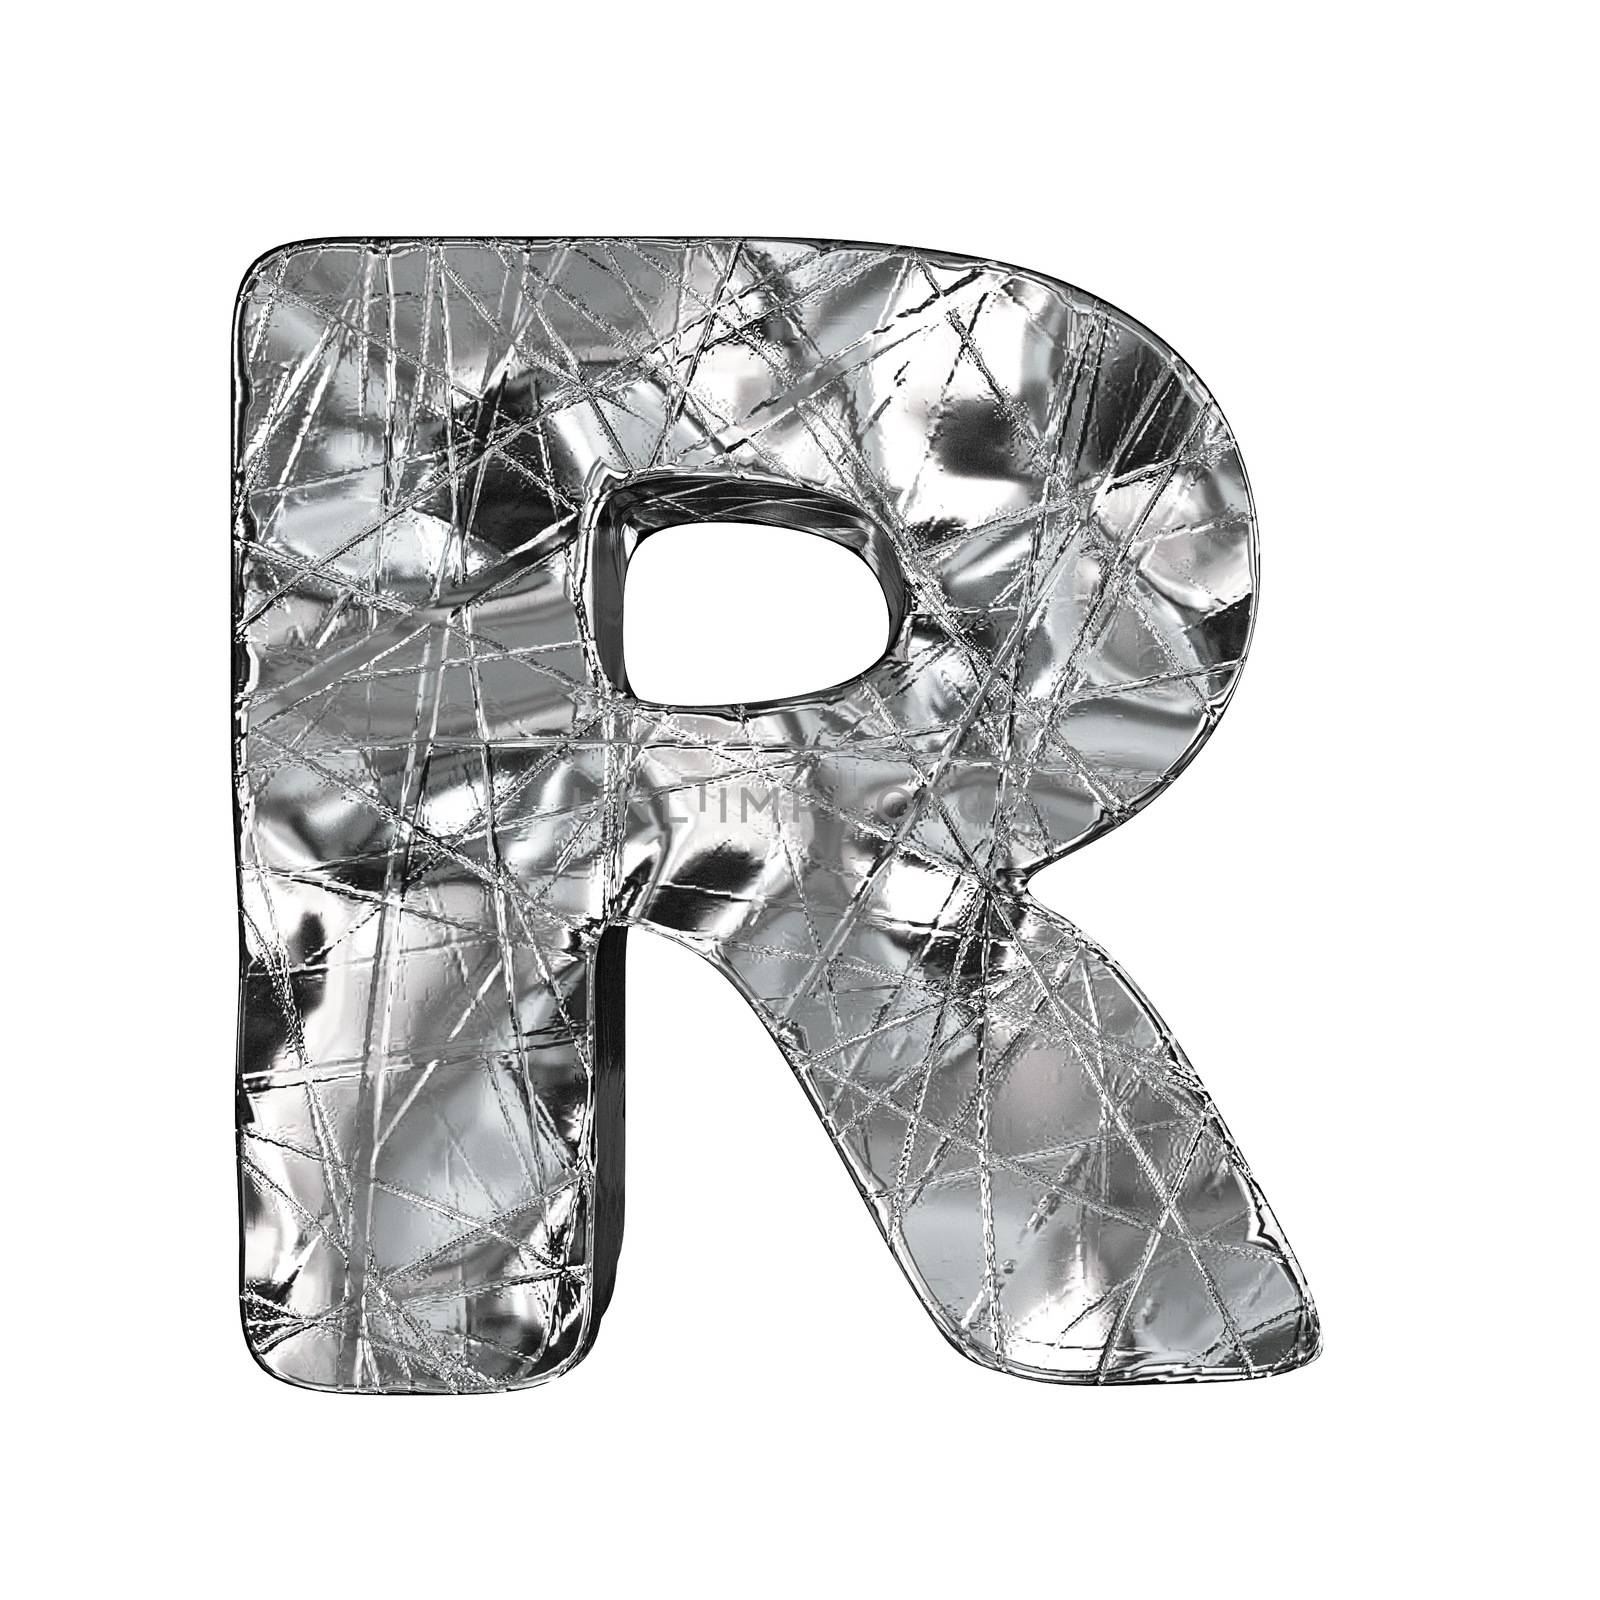 Grunge aluminium foil font letter R 3D render illustration isolated on white background